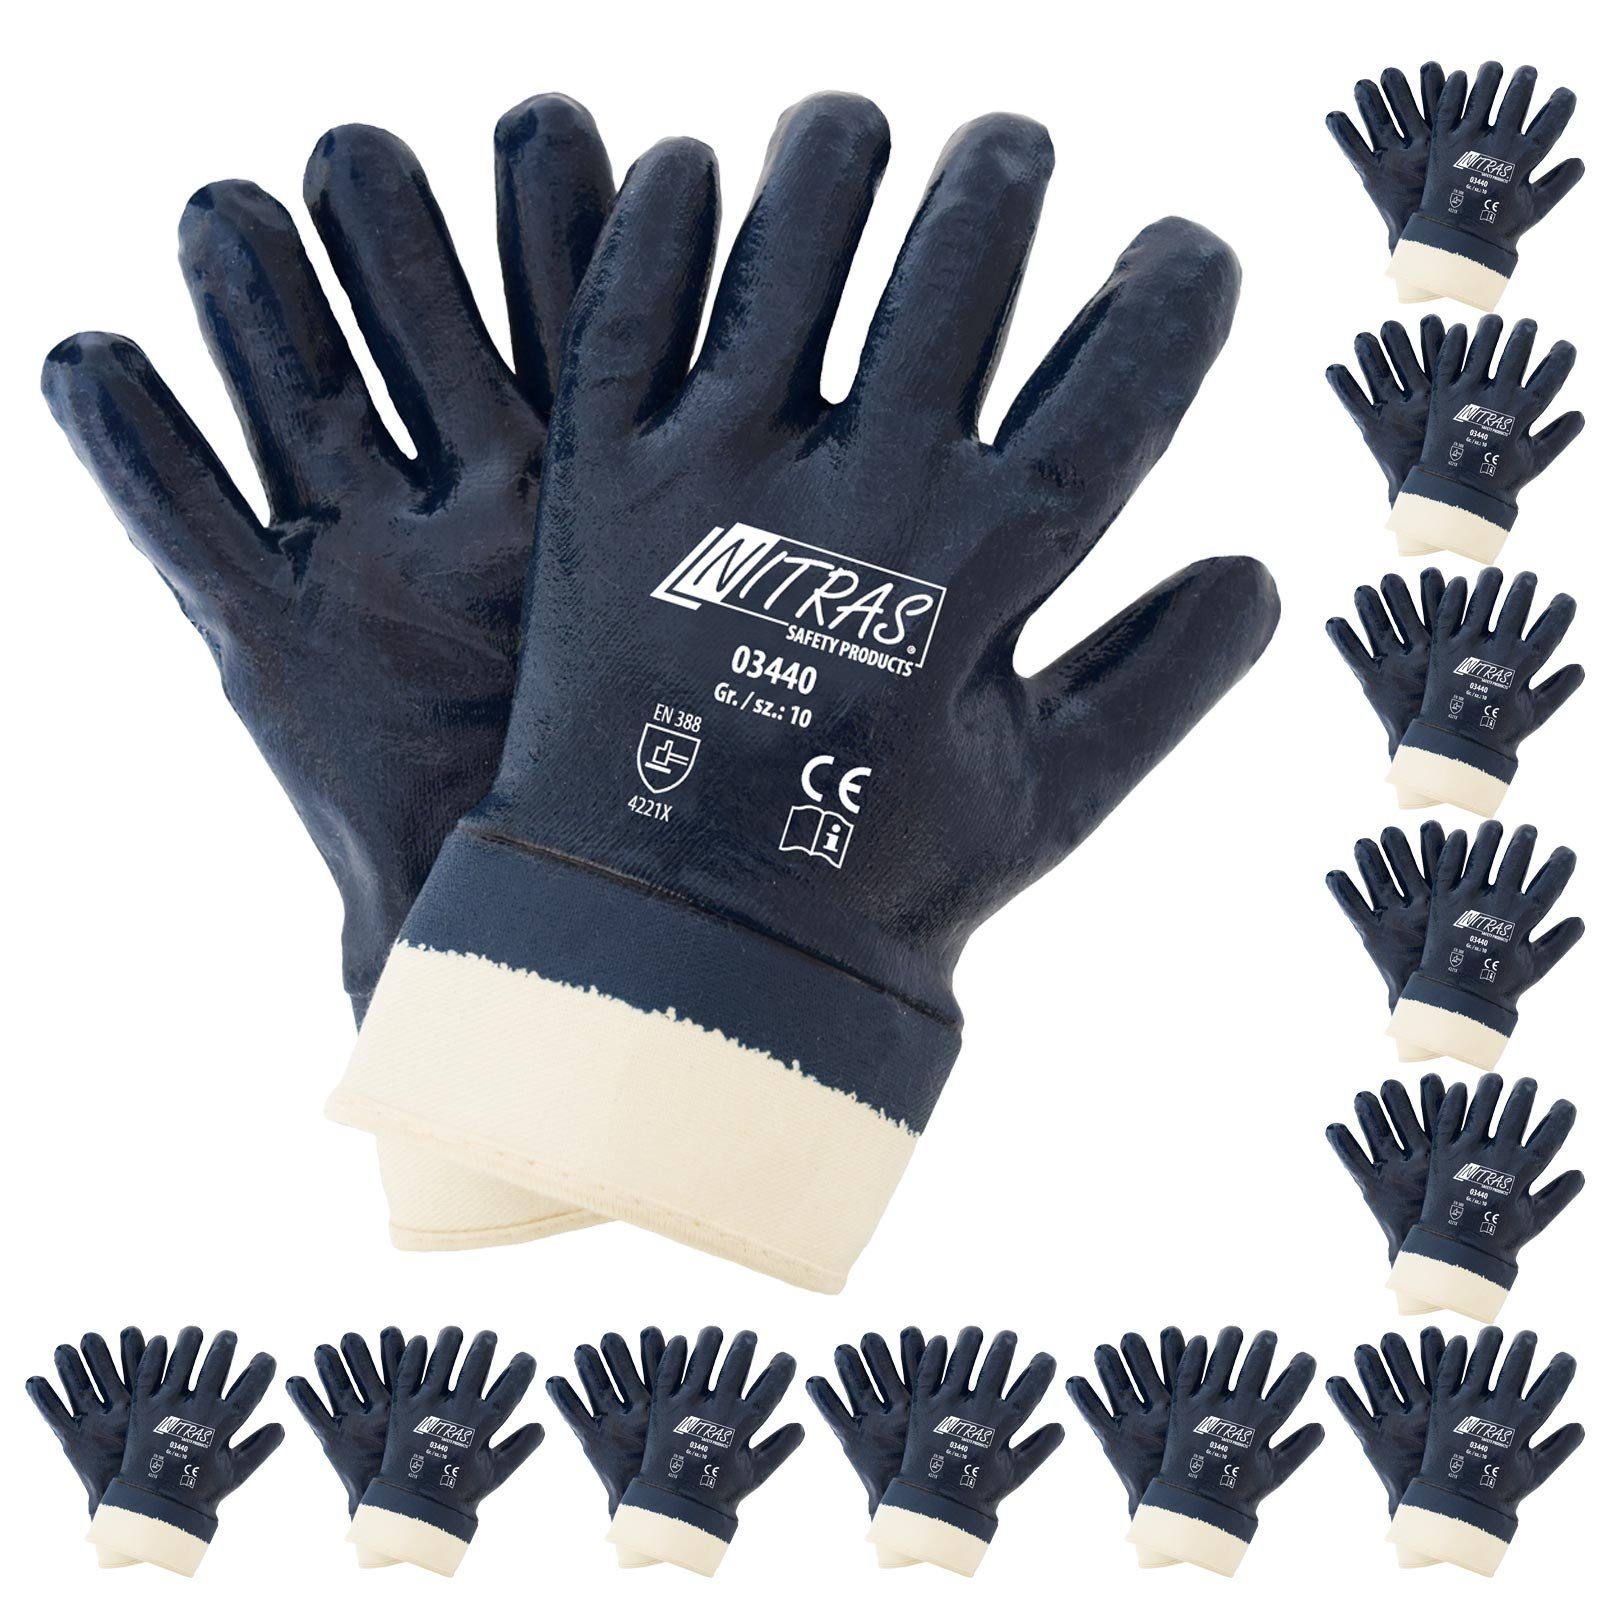 [Versand am selben Tag] Nitras Nitril-Handschuhe NITRAS (Spar-Set) Arbeitshandschuhe 12 Stulpe - Nitrilhandschuhe 03440 Paar mit